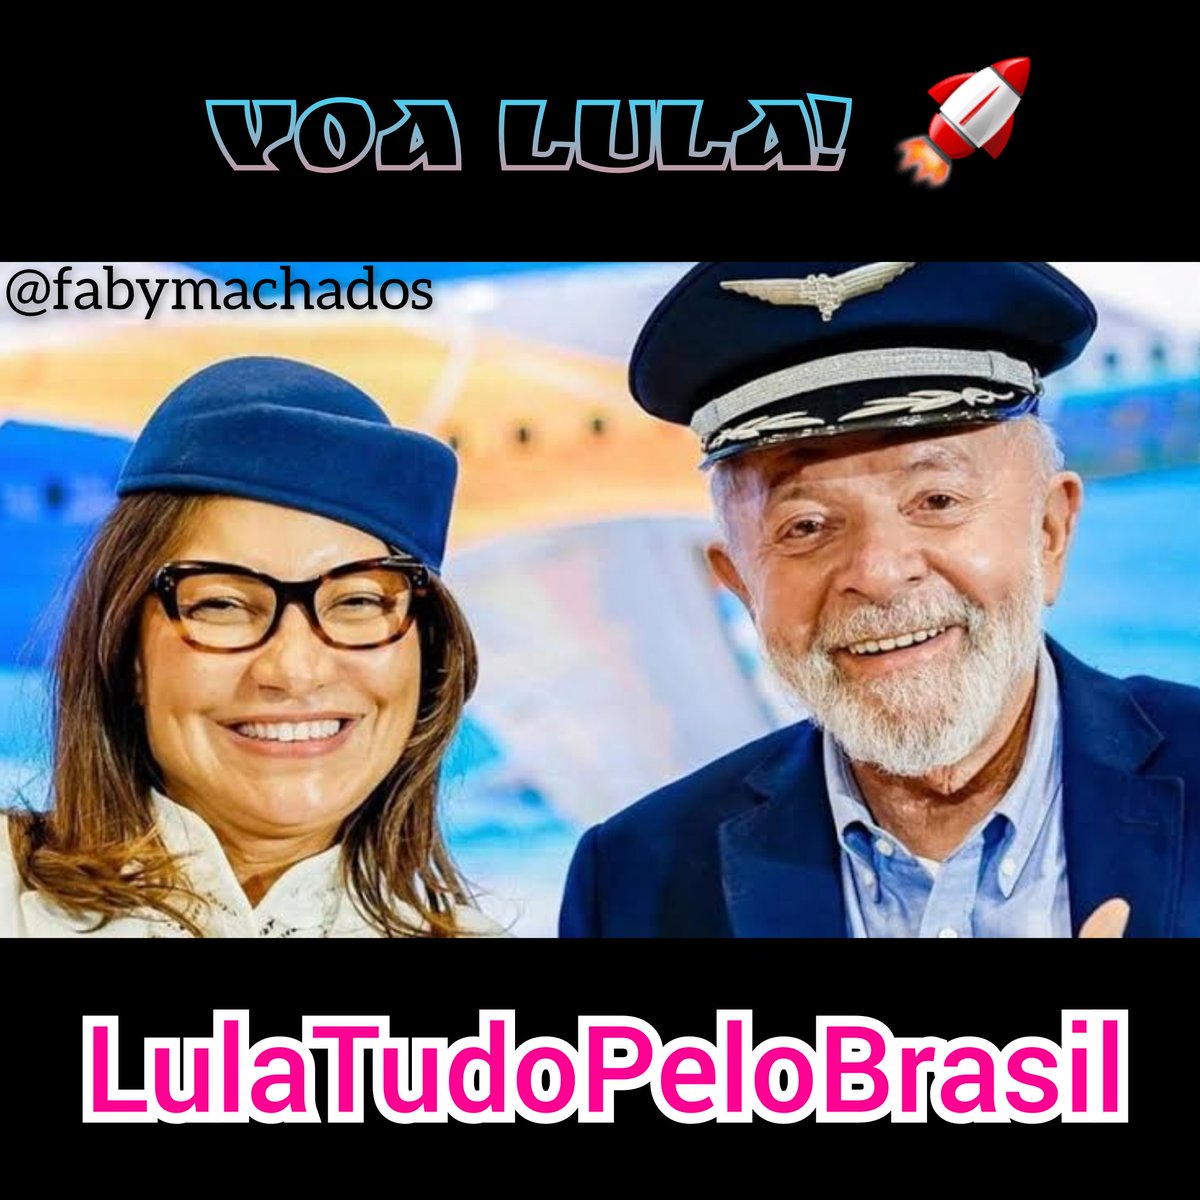 Muitos brasileiros não tem a menor ideia do tamanho do Presidente @LulaOficial lá fora. LULA É GIGANTE! @ptbrasil VOA LULA 🚀 #LulaTudoPeloBrasil